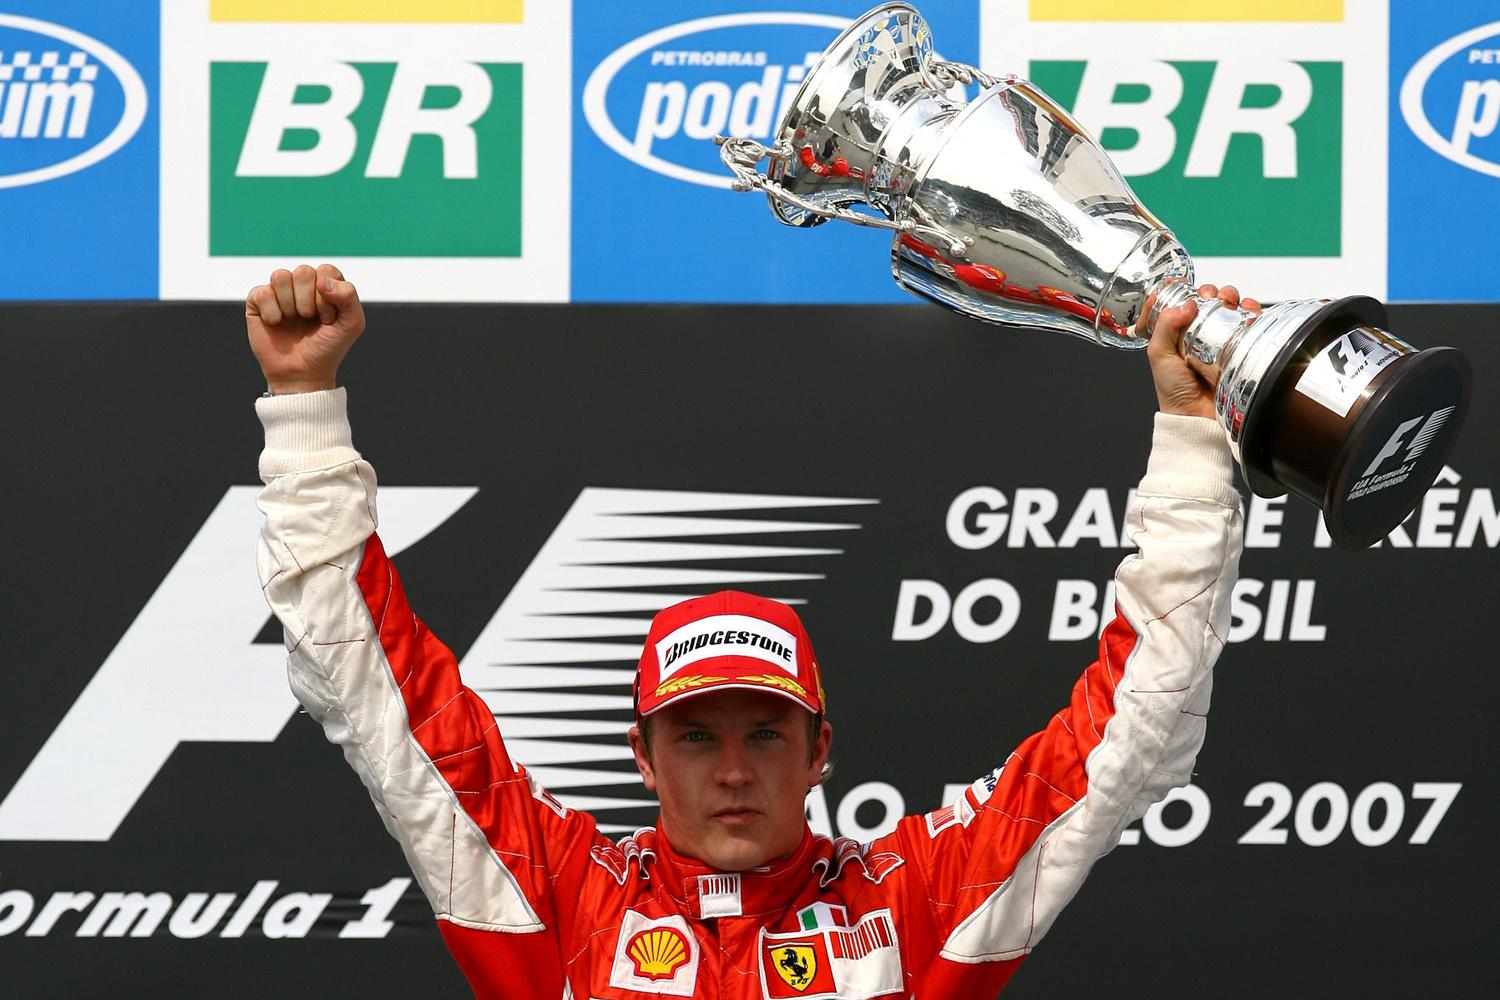 De laatste F1-rijder die aan het stuur van een Ferrari wereldkampioen werd, was Kimi Räikkönen in 2007.